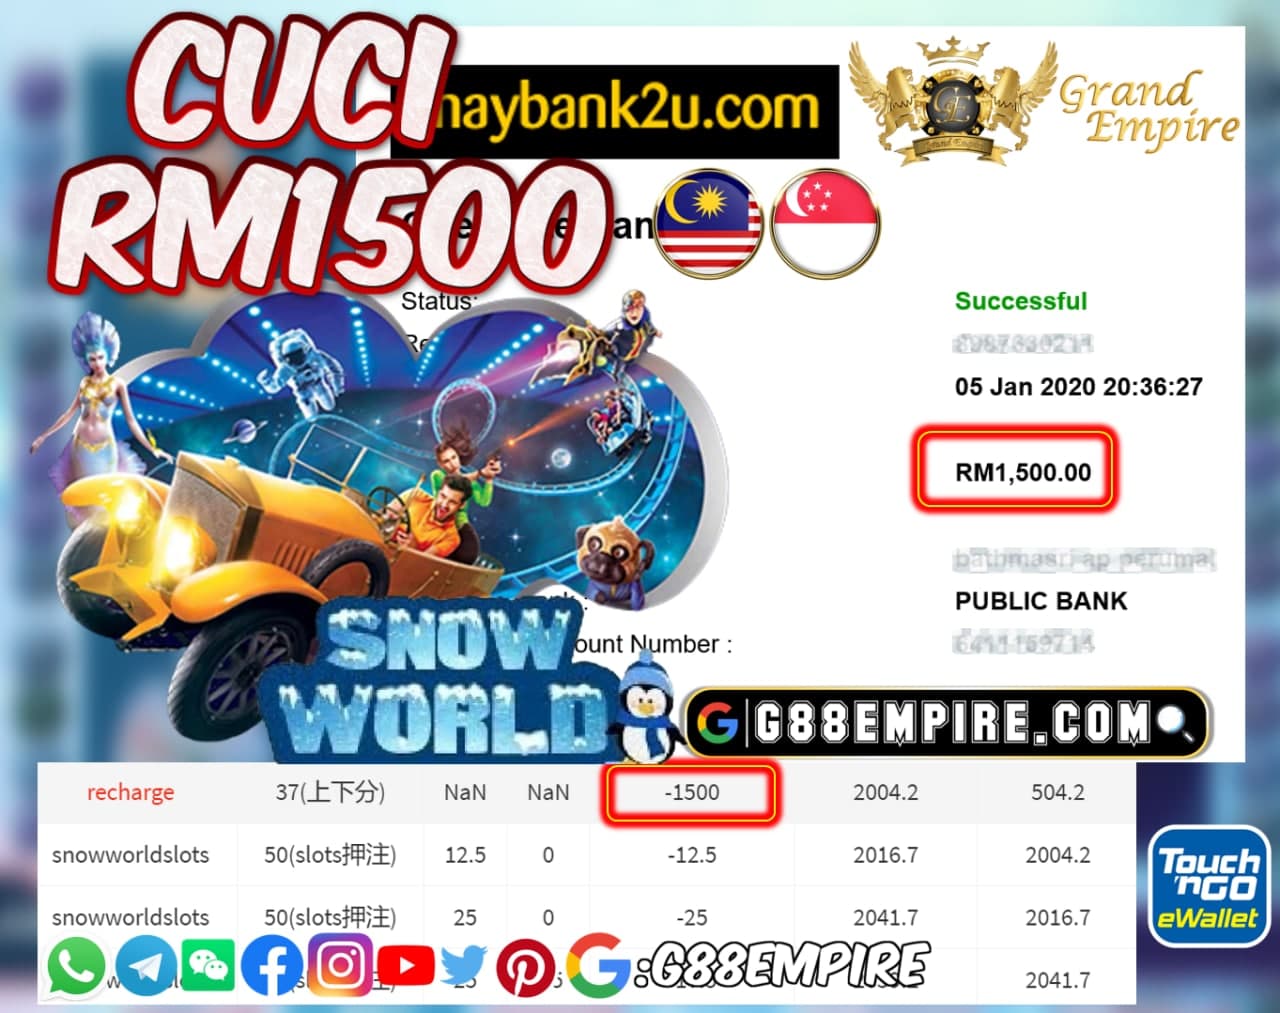 MEMBER MAIN SNOWWORLDSLOTS CUCI RM1500!!!